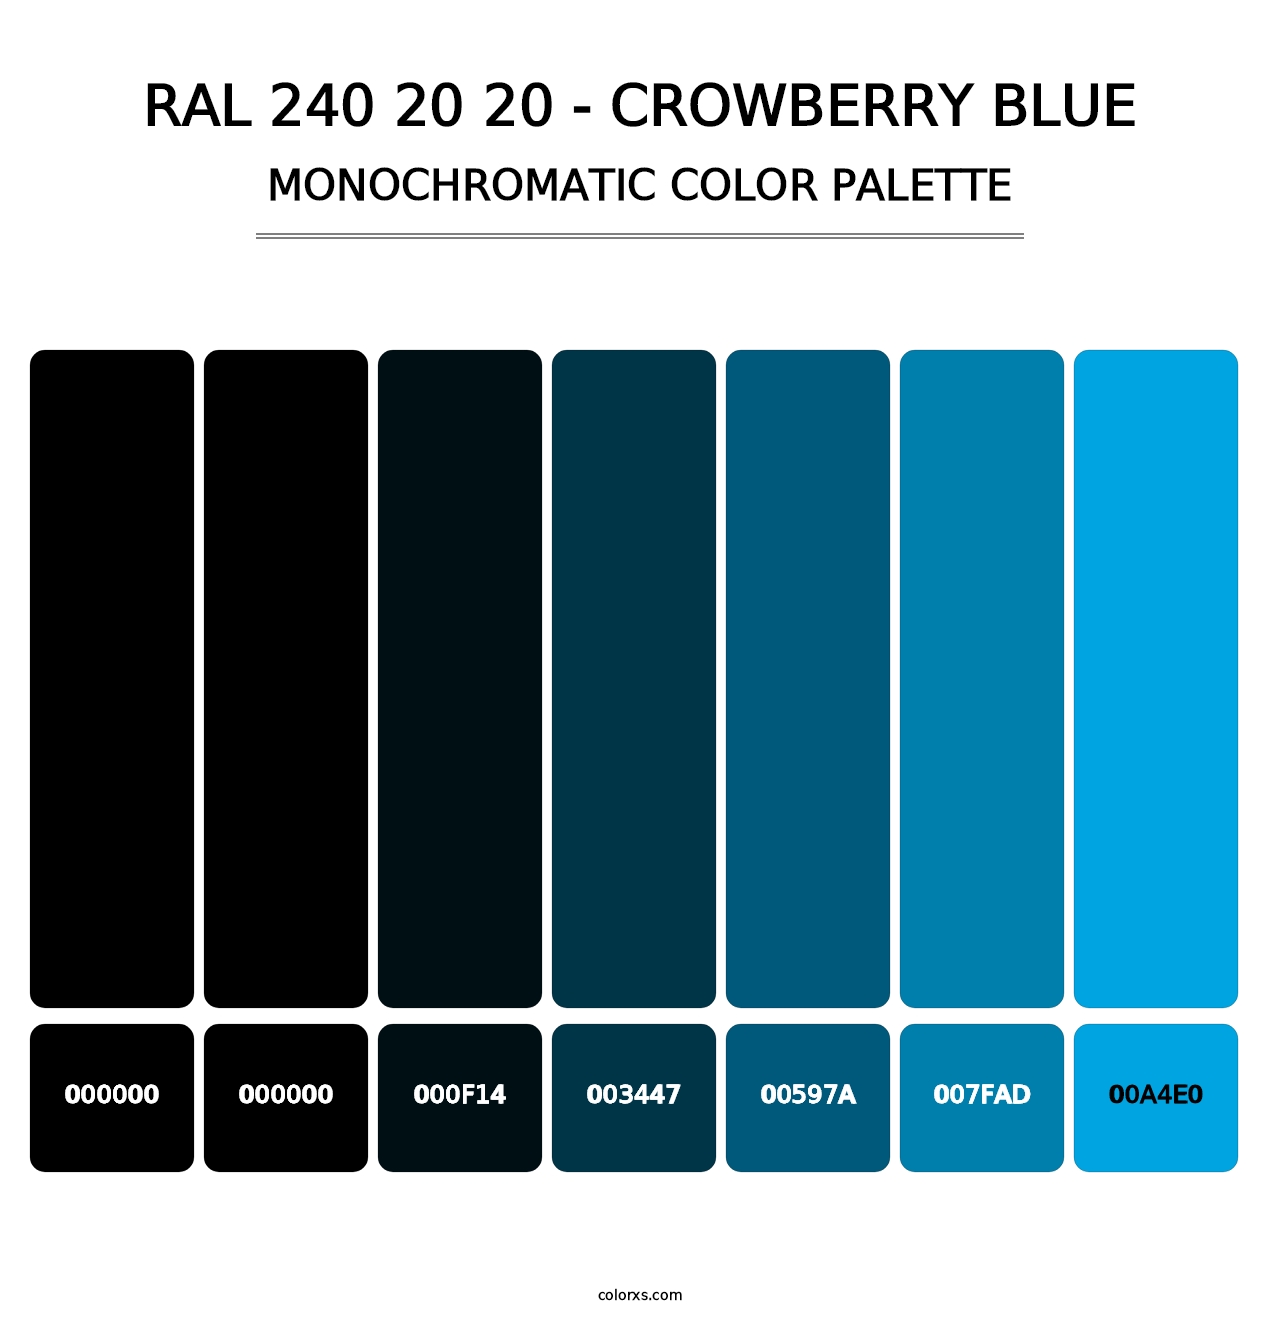 RAL 240 20 20 - Crowberry Blue - Monochromatic Color Palette